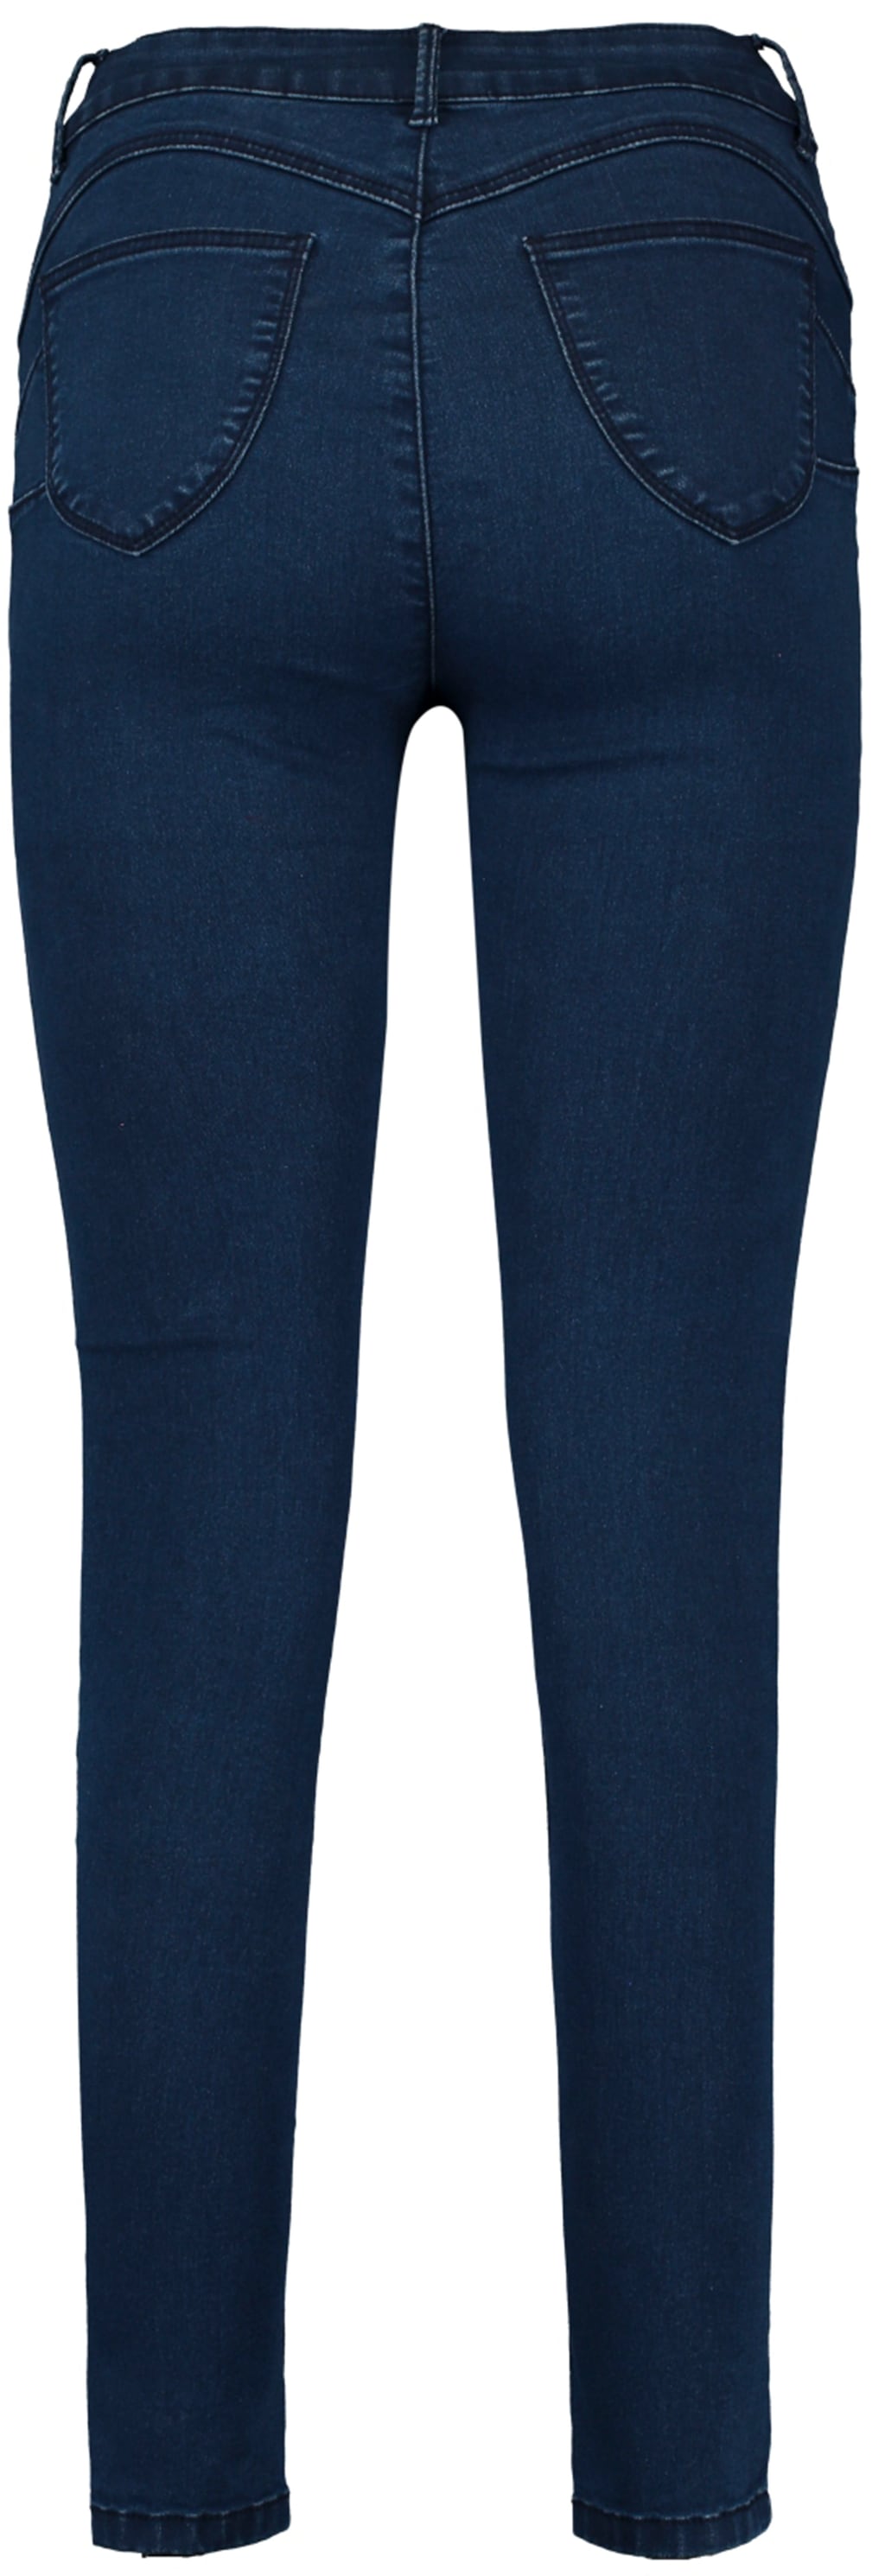 HaILY’S Push-up-Jeans "PUSH", in 7/8- Länge günstig online kaufen